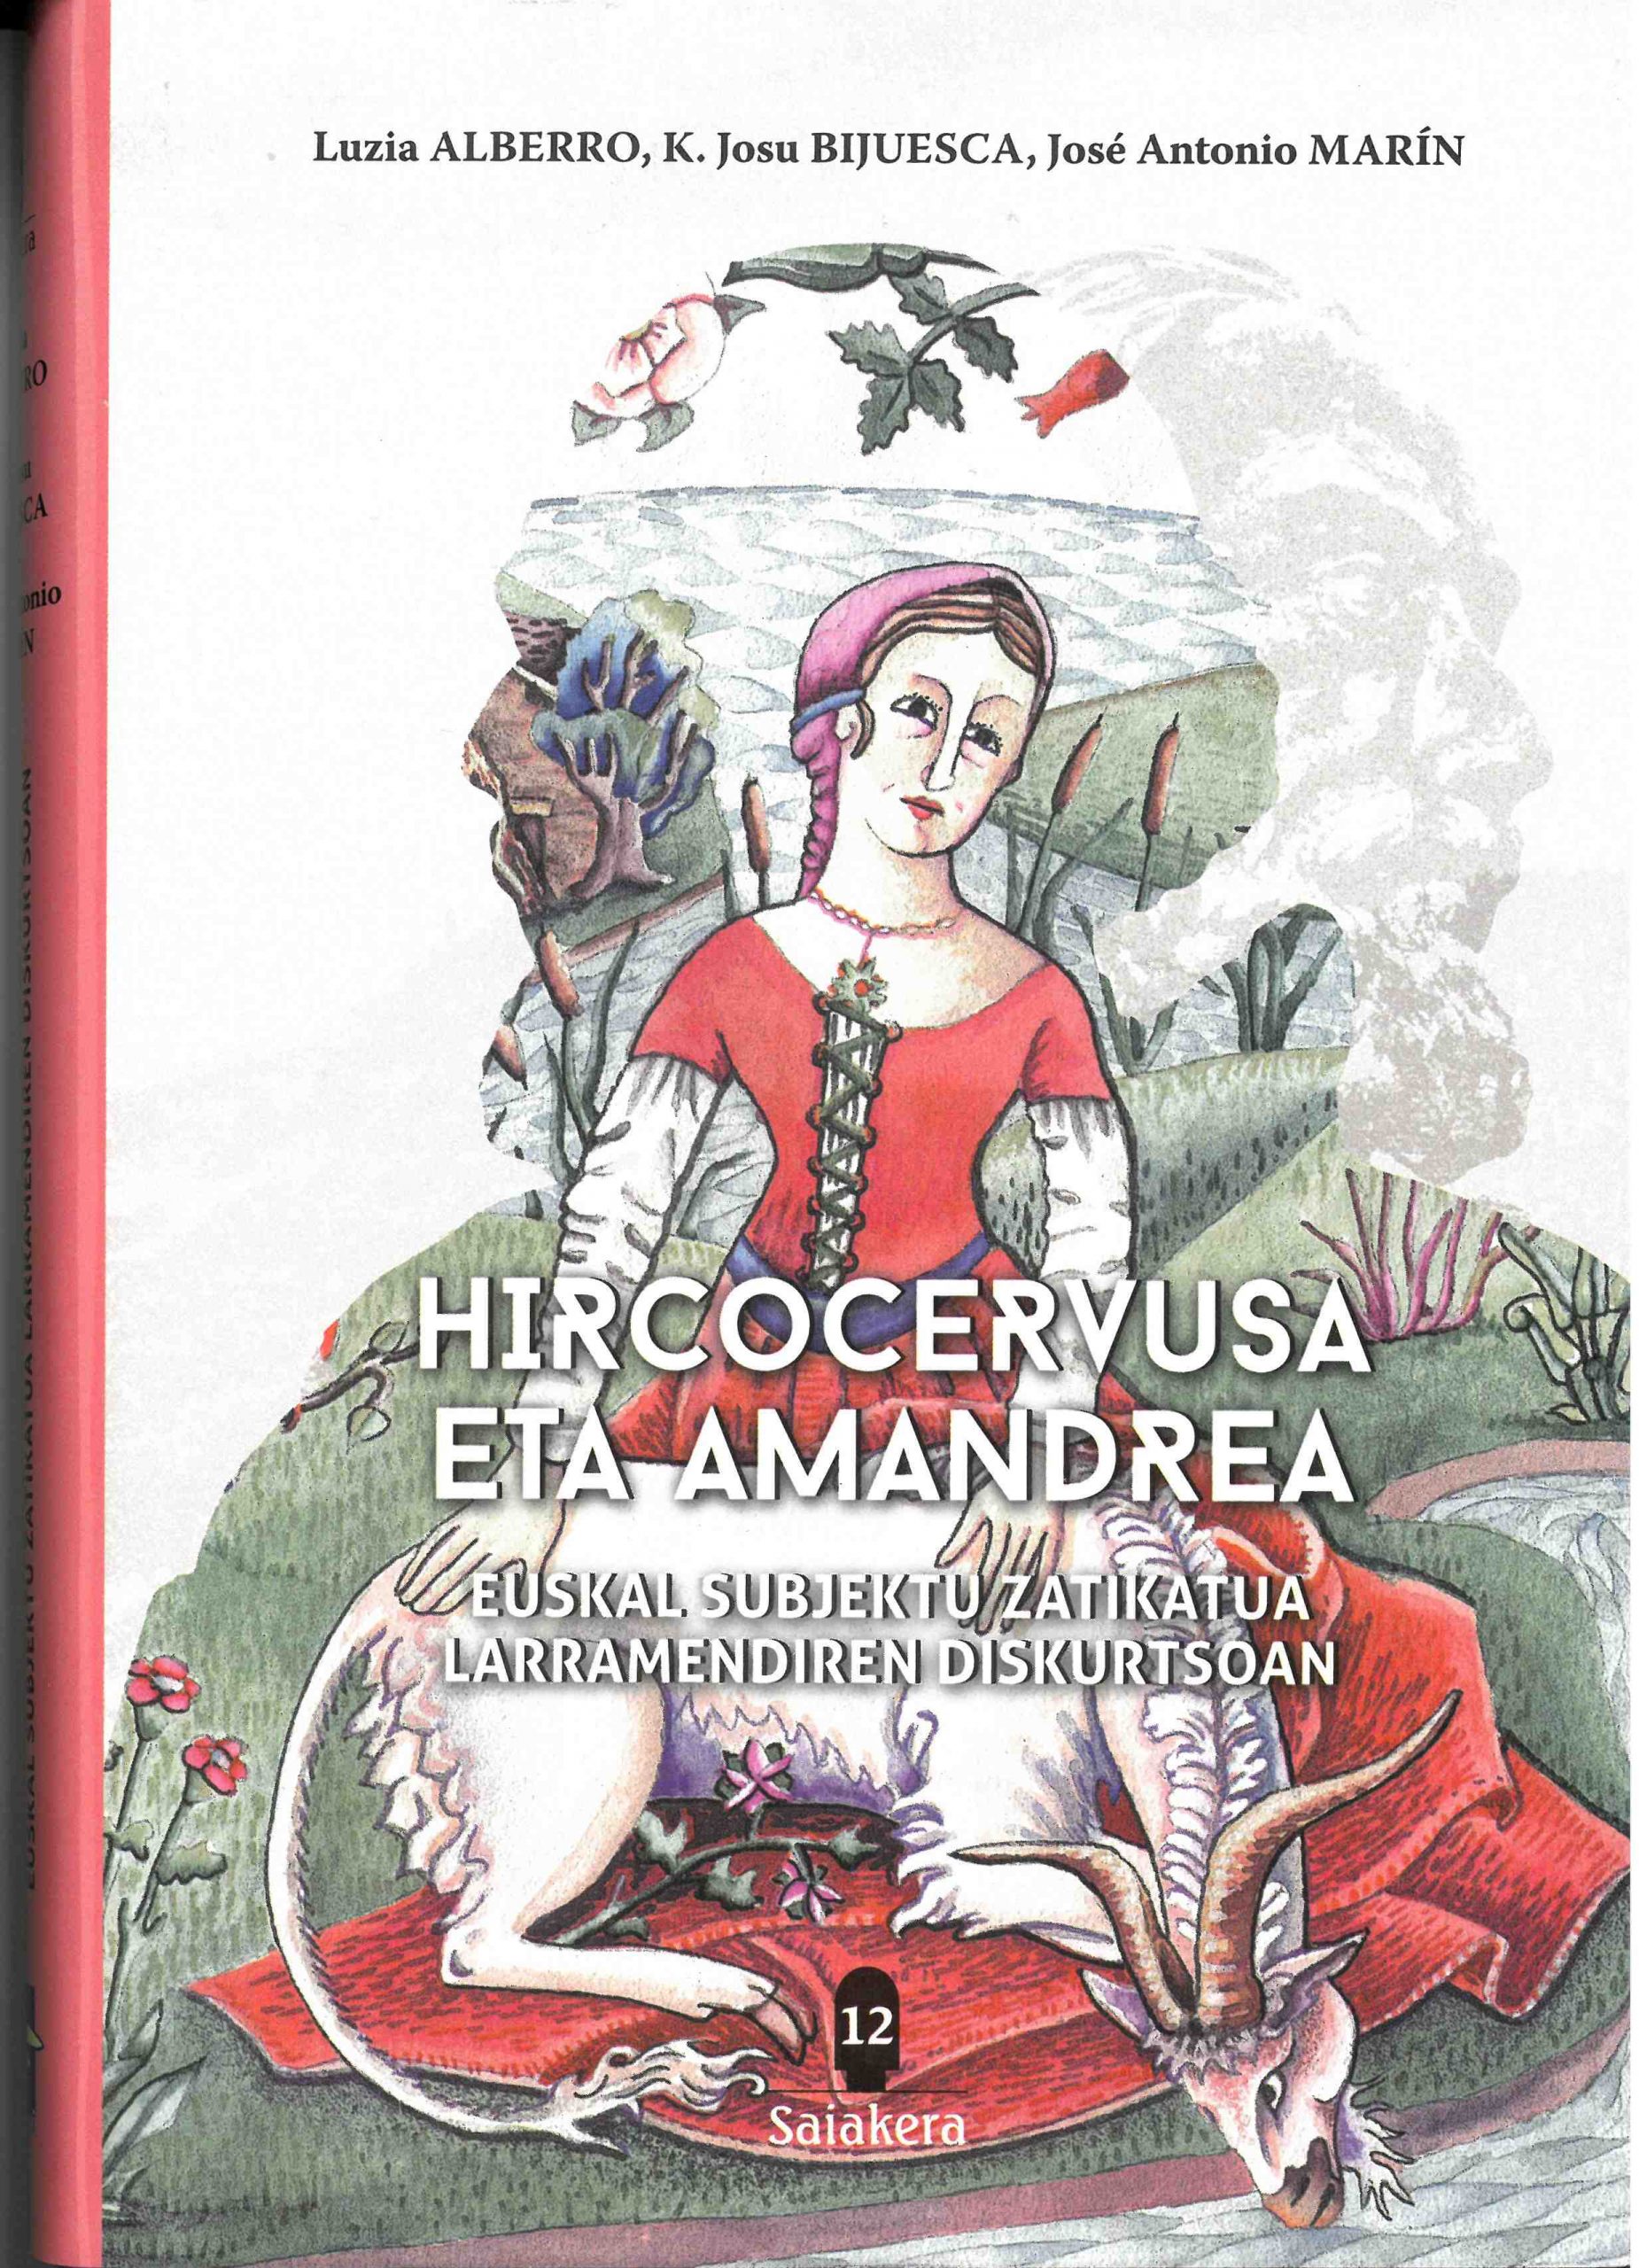 Imagen de portada del libro Hircocervusa eta amandrea